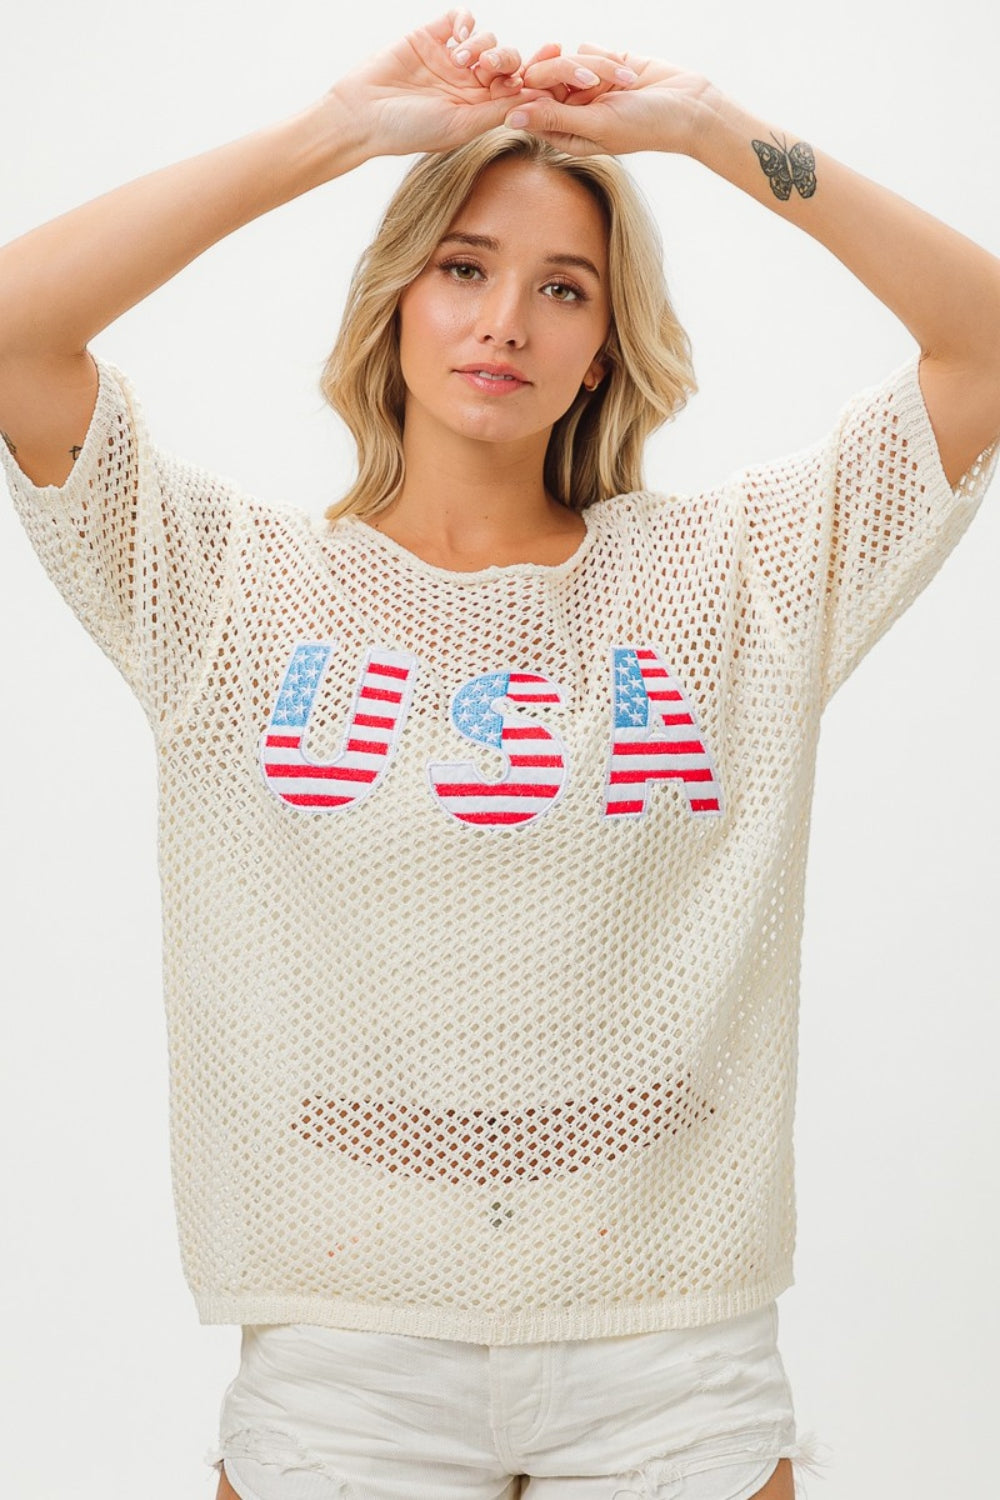 BiBi US Flag Theme Knit Cover Up